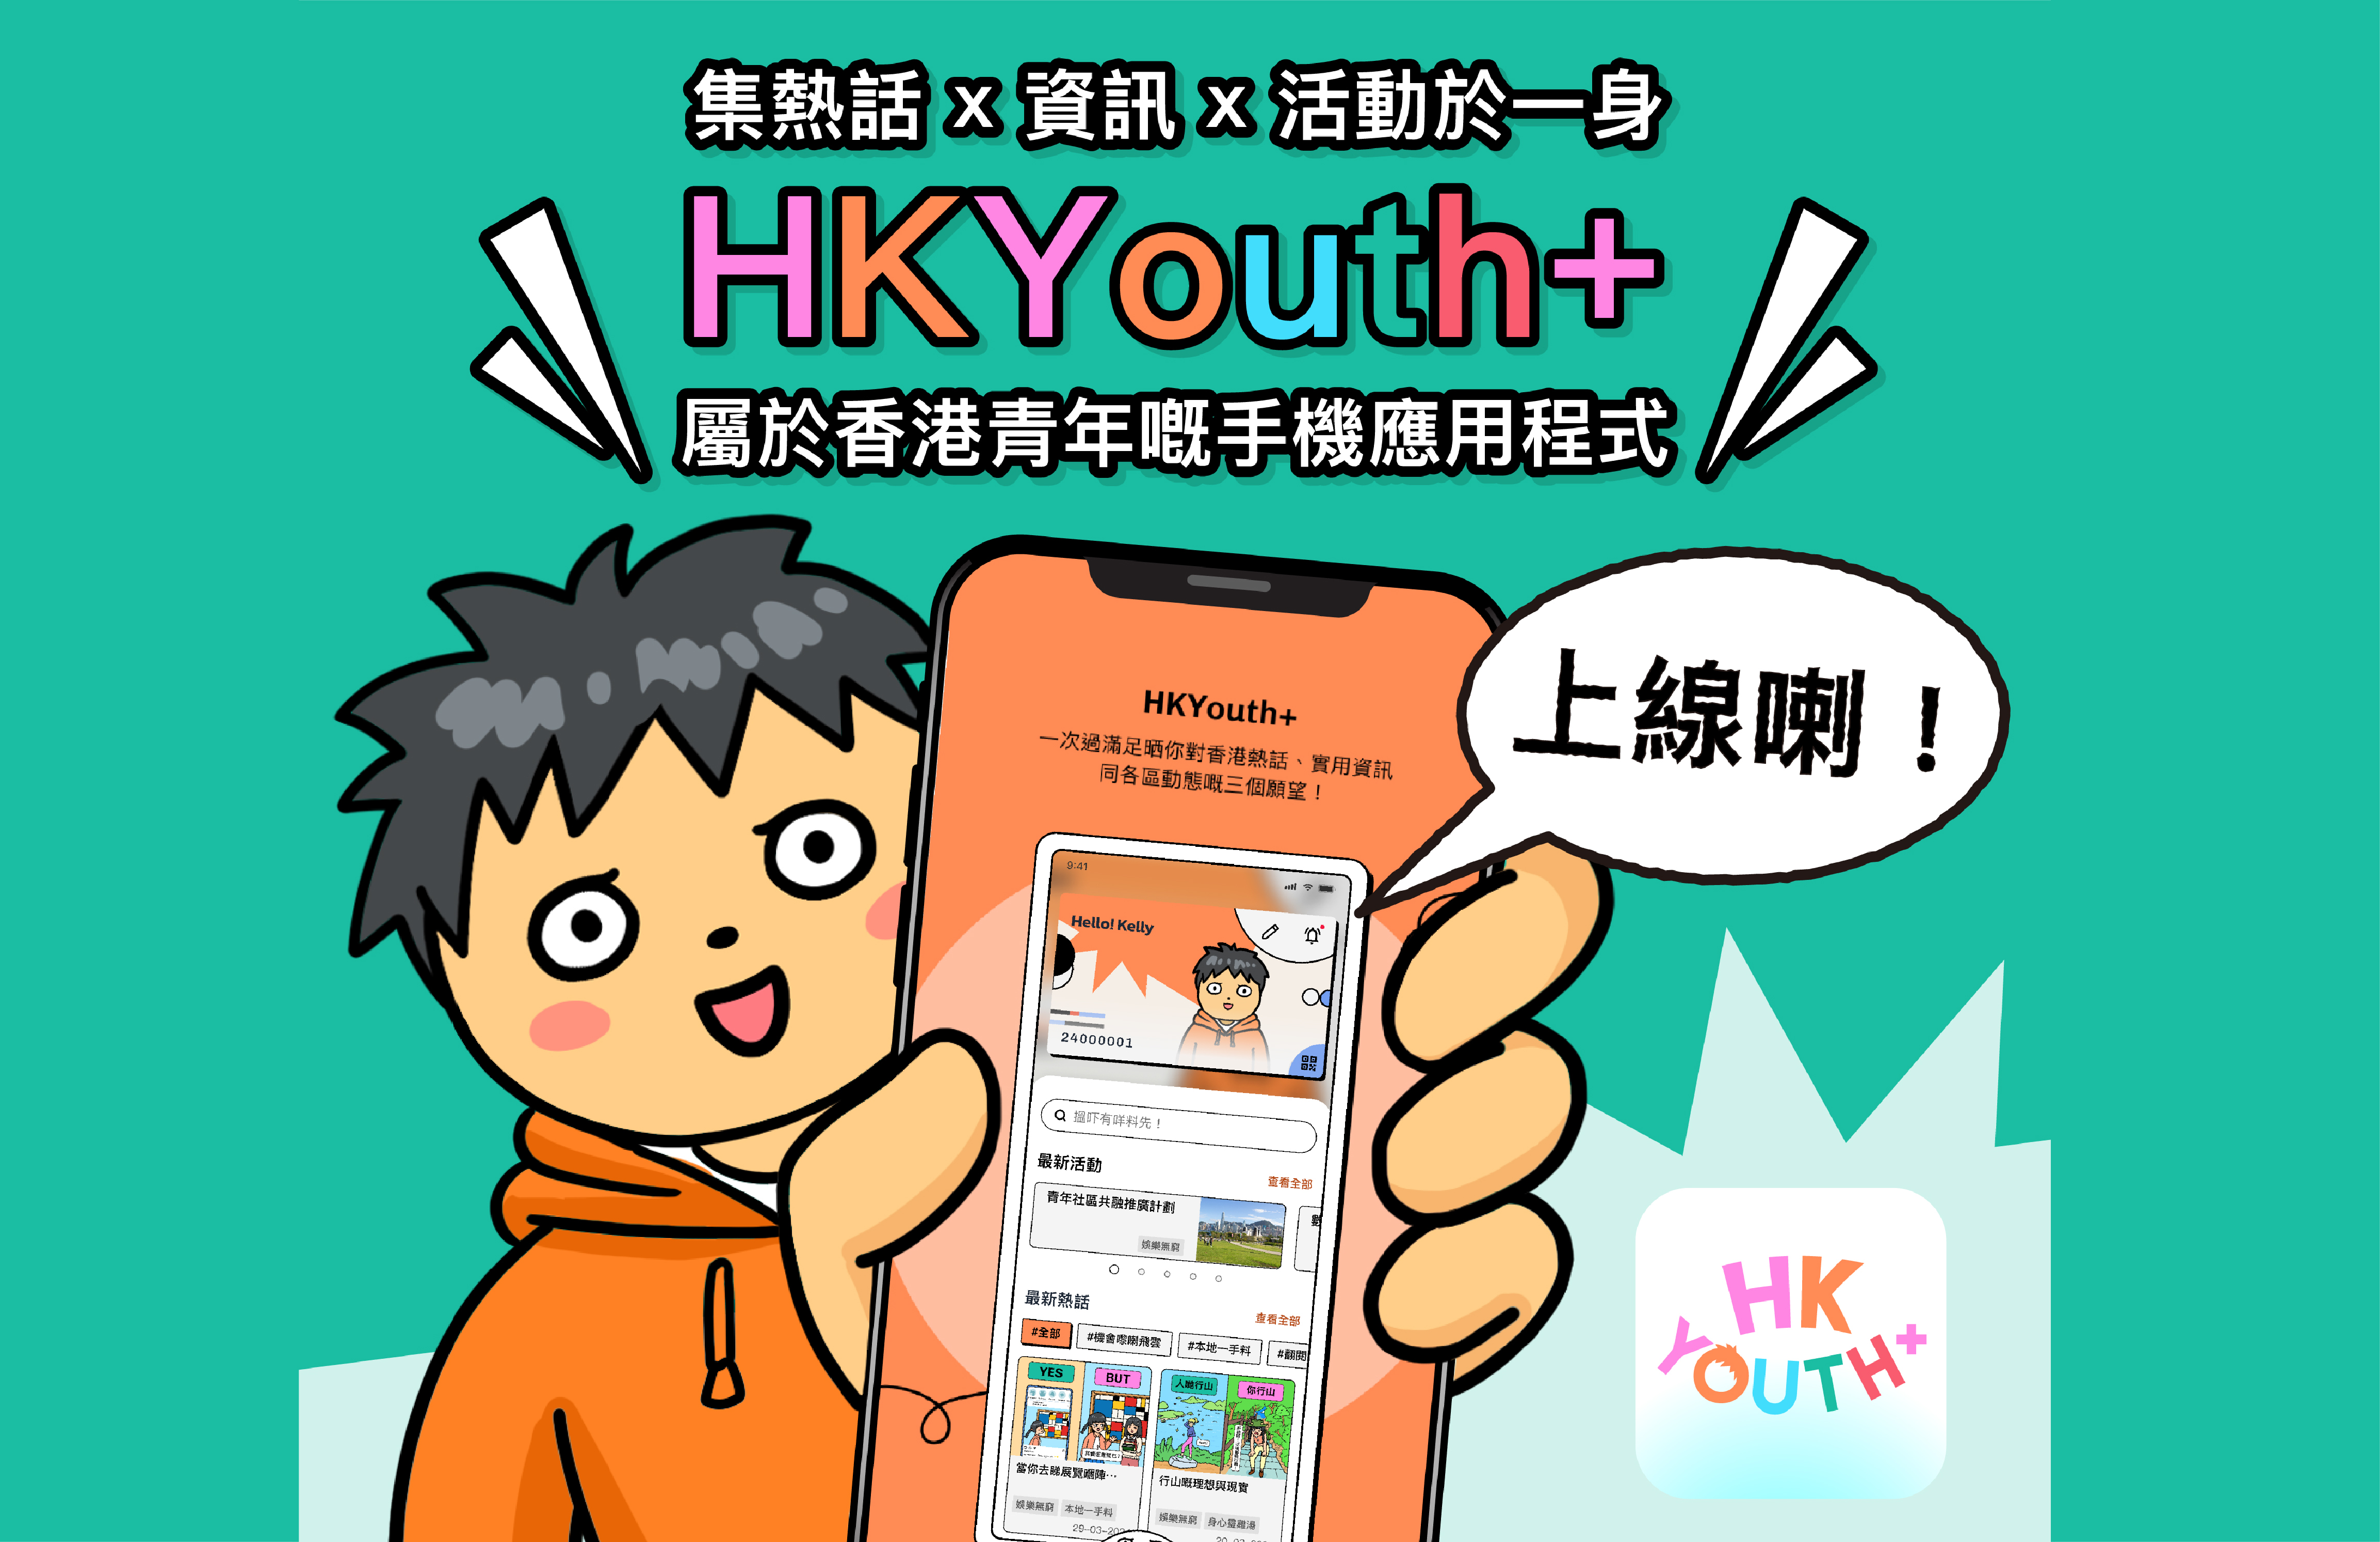 民政及青年事務局推出HKYouth+青年手機應用程式